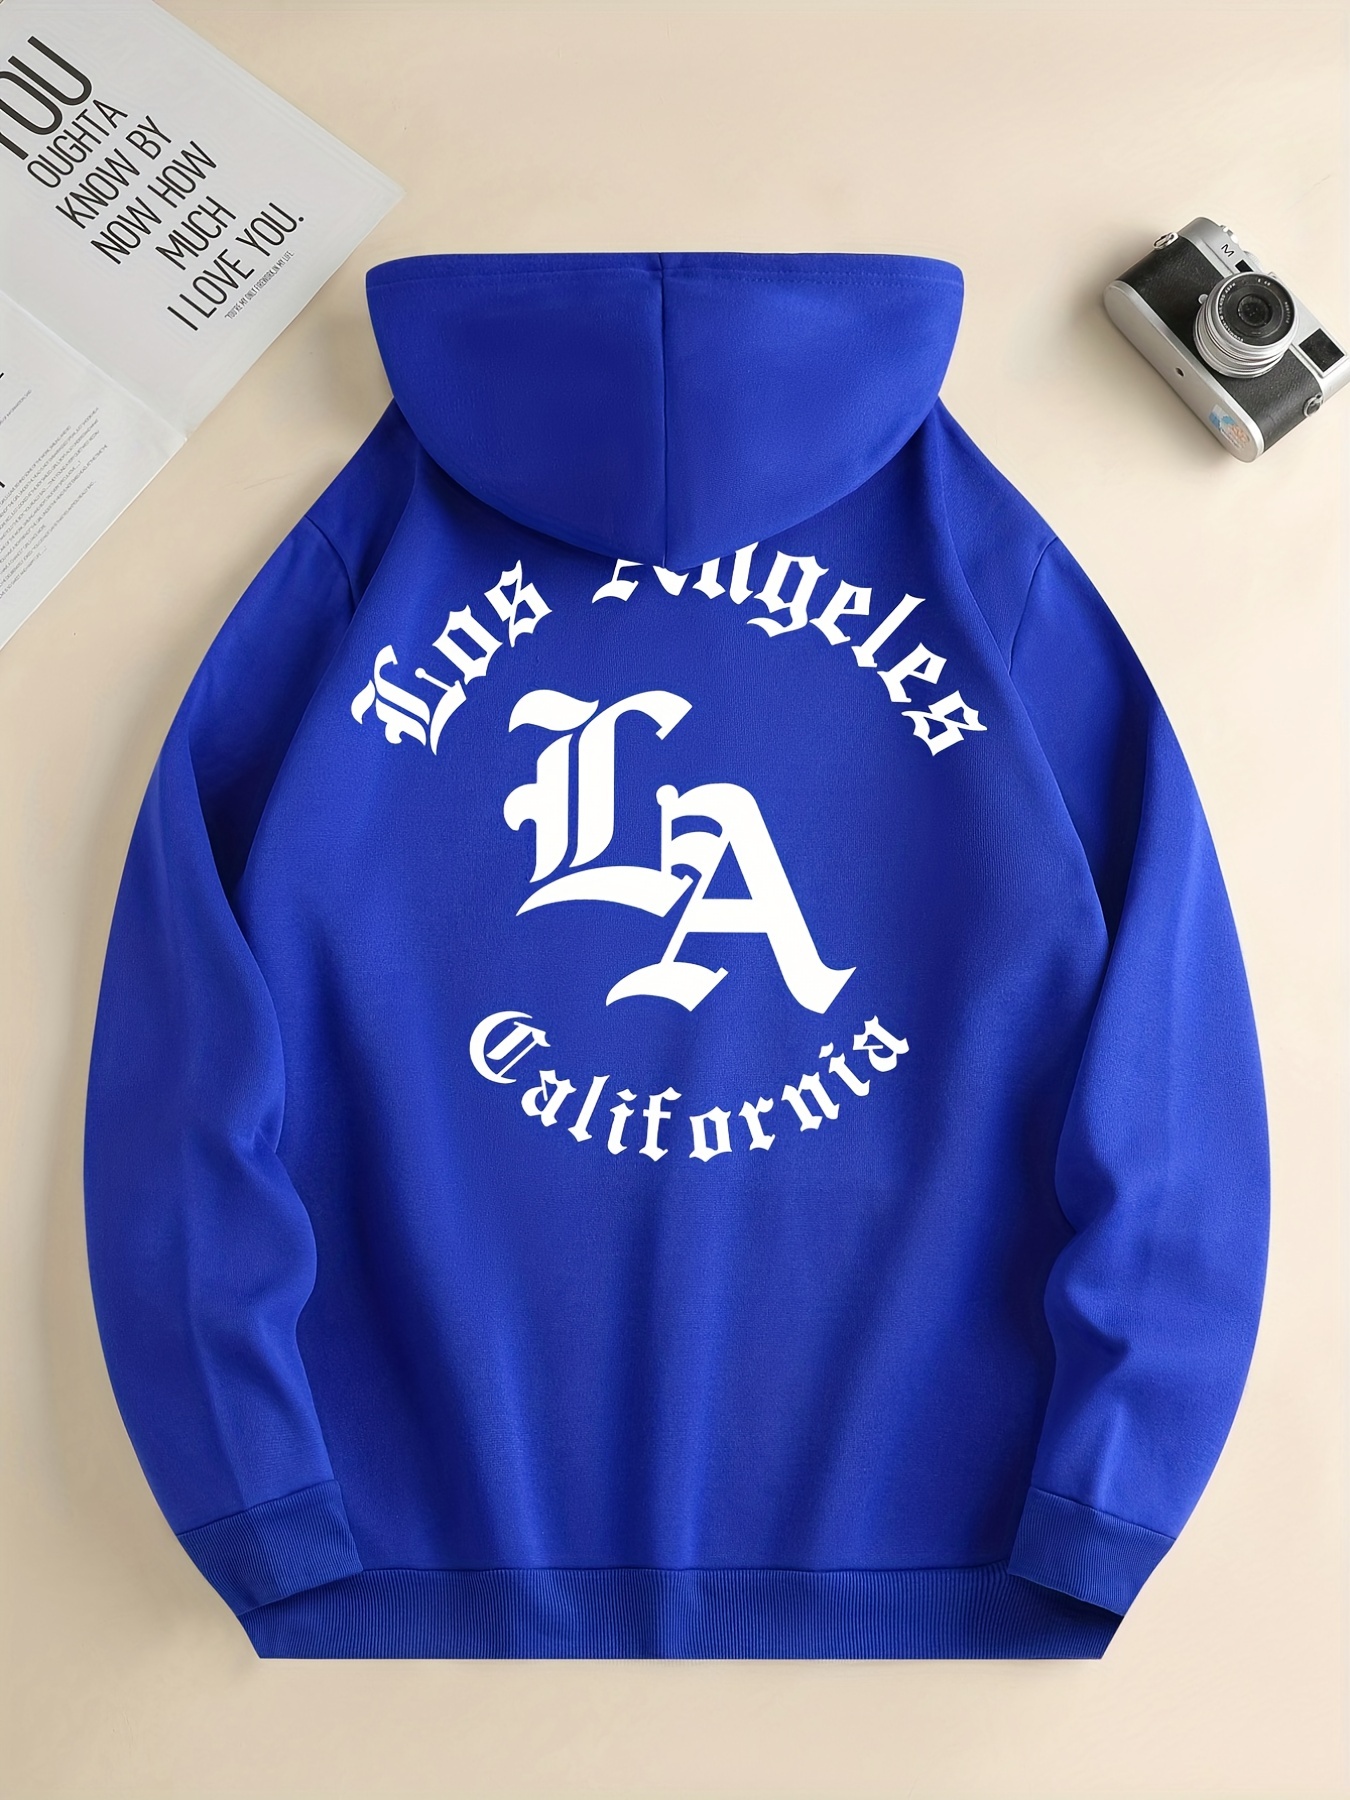 Los Angeles Dodgers LA logo Distressed Vintage T-shirt 6 Sizes S-3XL!!